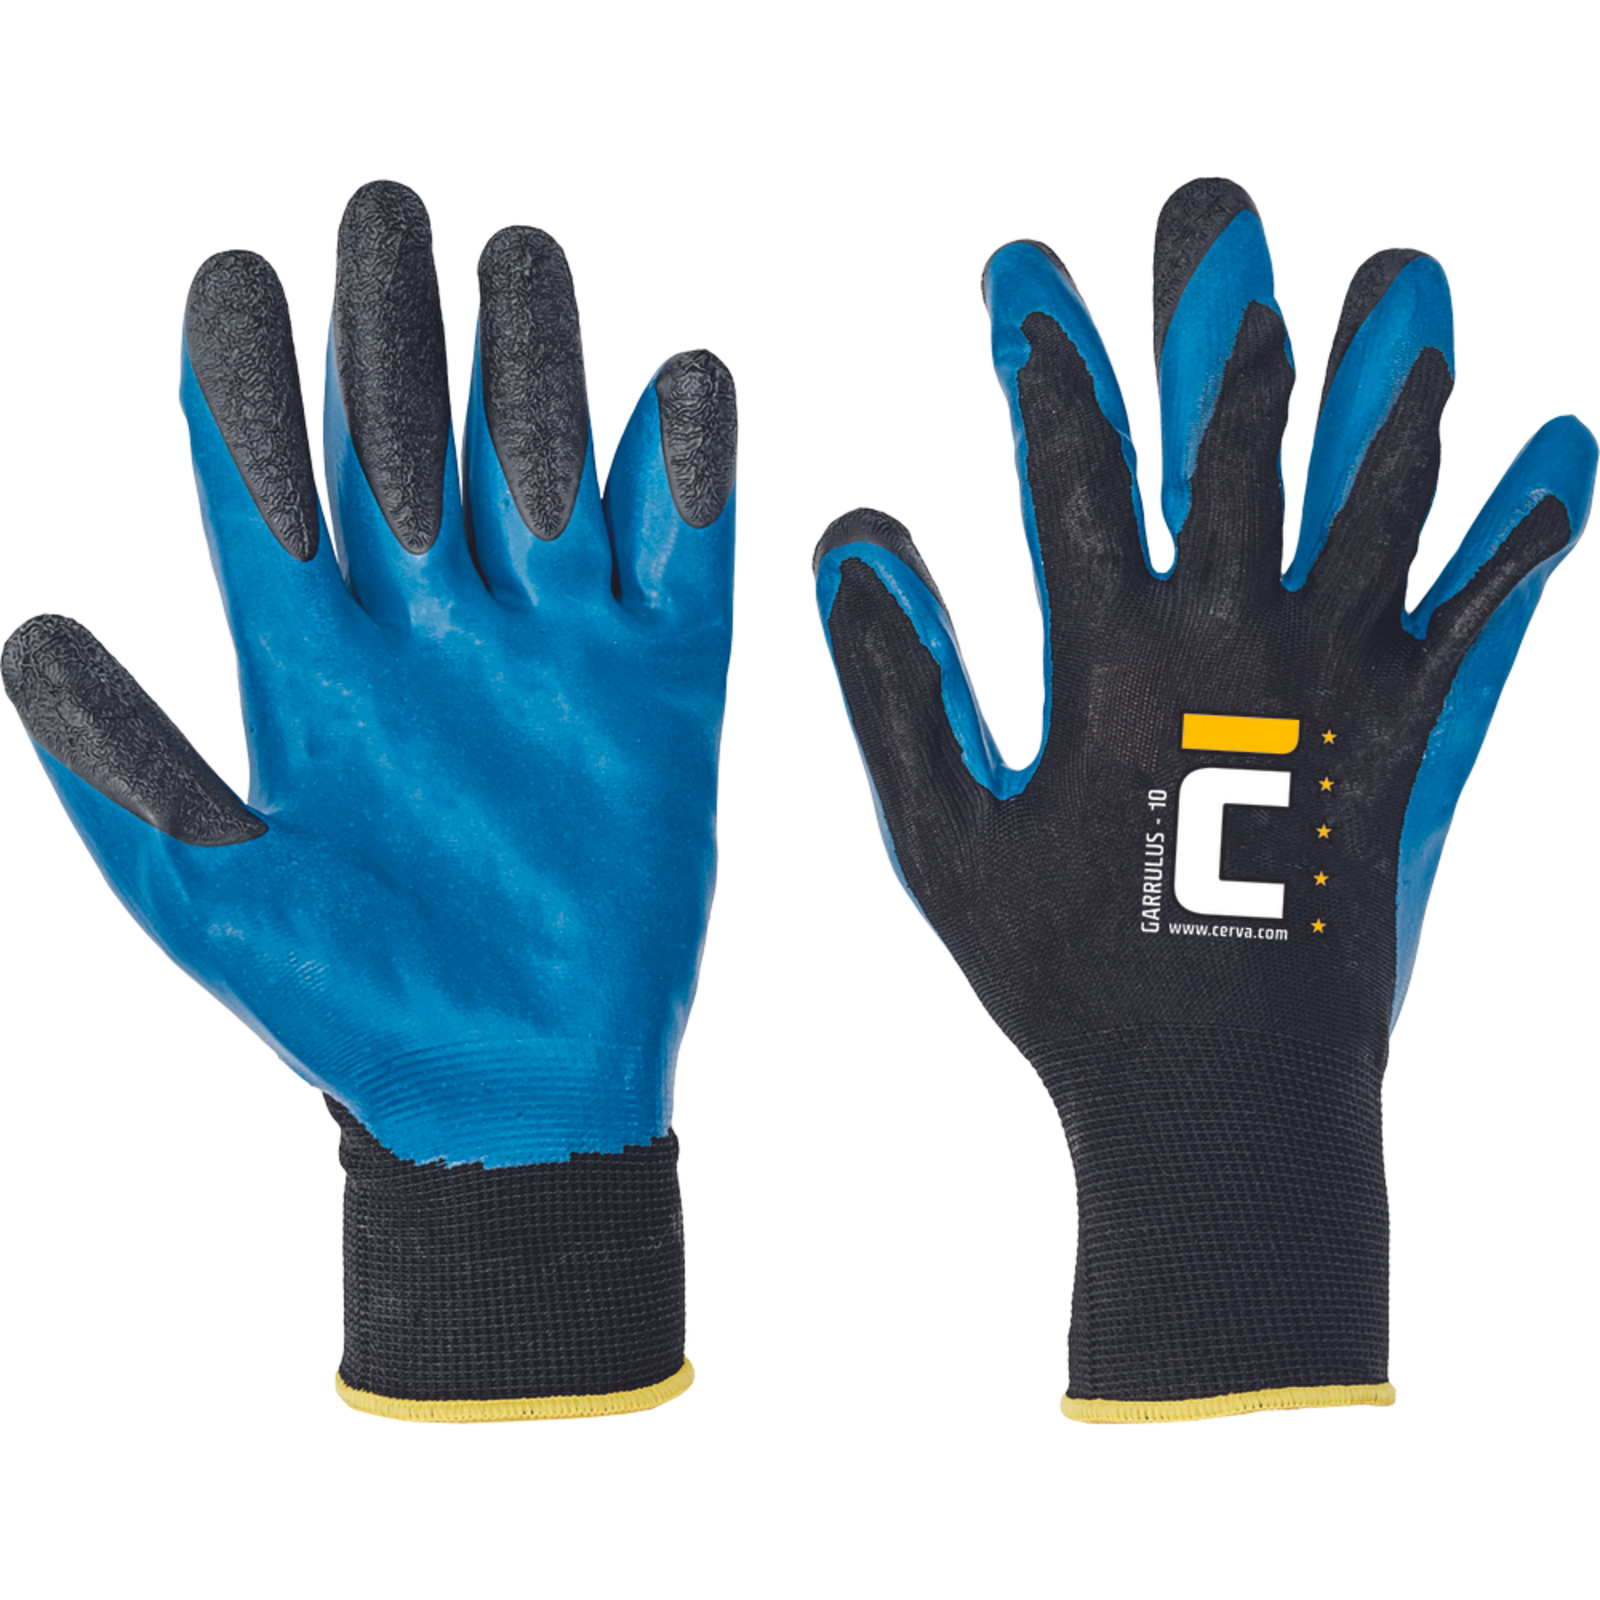 Pracovné rukavice Cerva Garrulus, mechanické - univerzálne, máčané latex - veľkosť: 9/L, farba: modrá/čierna